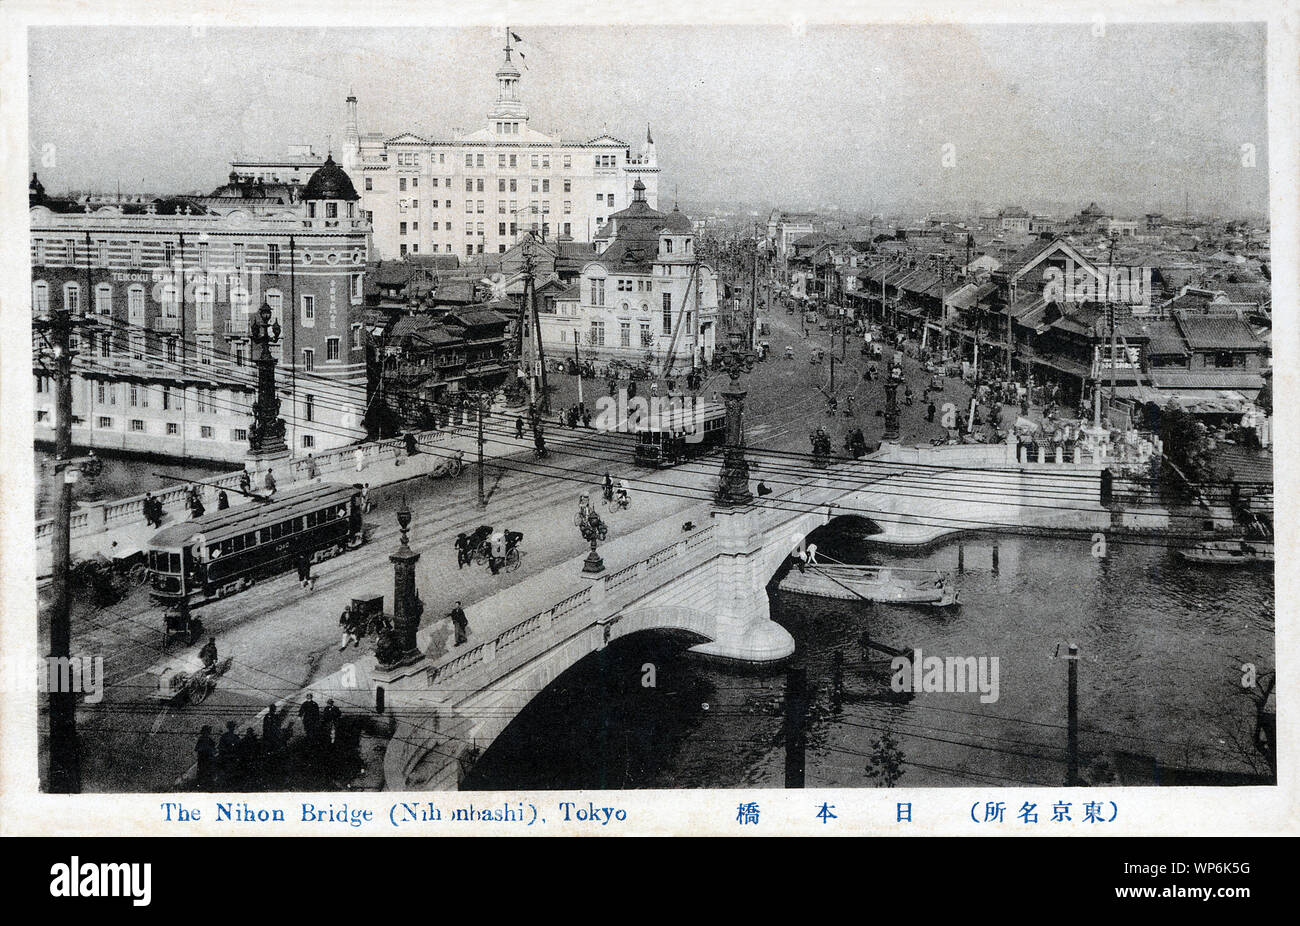 [1910s Japan - Nihonbashi Brücke in Tokio] - Straßenbahnen Nihonbashi Brücke in Tokio, von Yorinaka Tsumaki (妻木頼黄, 1859-1916) ausgelegt. Das Gebäude auf der linken Seite ist der Sitz der Teikoku Seima Co., Ltd. (noch heute aktiv als Teikoku Sen-I Co., Ltd.). 1913 (taisho 2) abgeschlossen, es wurde entwickelt von tatsuno Kingo (辰野金吾, 1854-1919) und gilt als ein repräsentatives Beispiel der Meiji Periode (1868-1912) Architektur zu sein. Das weiße Gebäude auf der Rückseite ist das Mitsukoshi Kaufhaus. 20. jahrhundert alte Ansichtskarte. Stockfoto